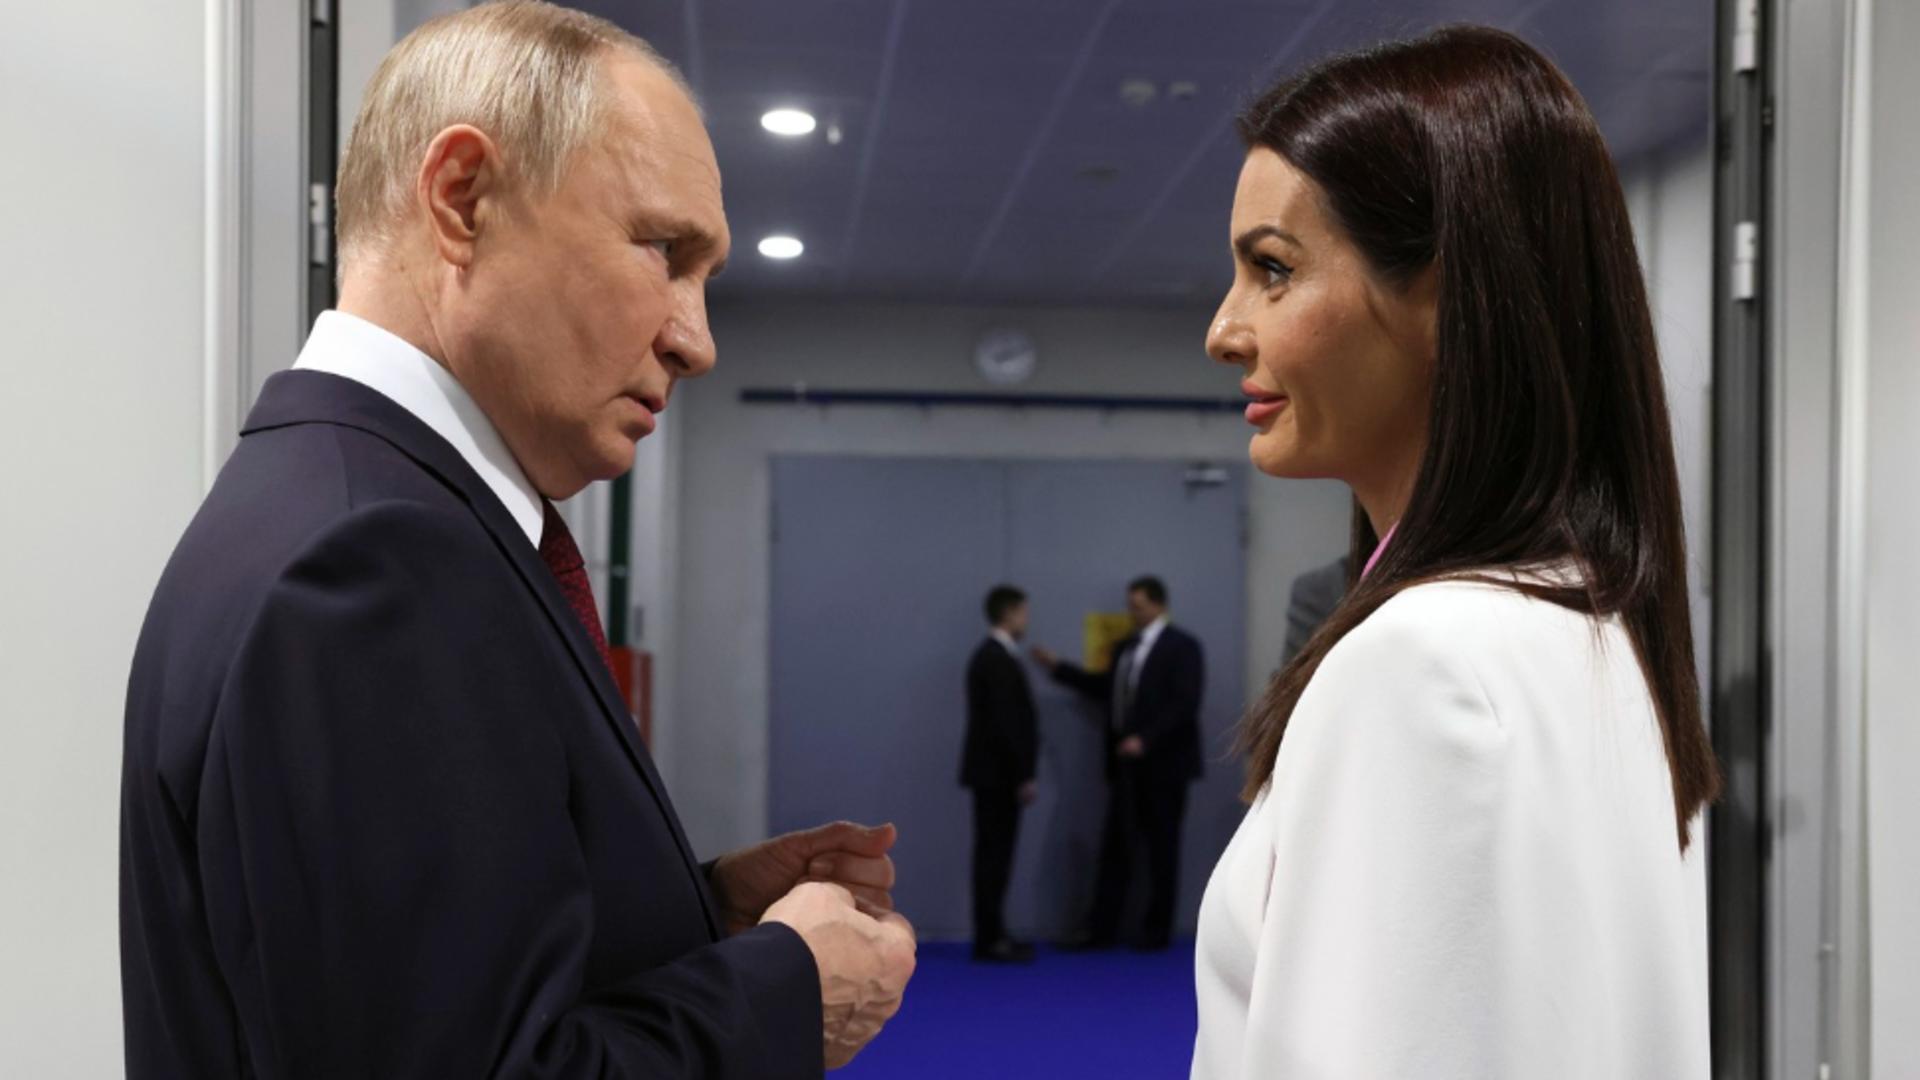 Lidera Găgăuziei spune că Putin le-a promis că-i sprijină în „apărarea drepturilor”